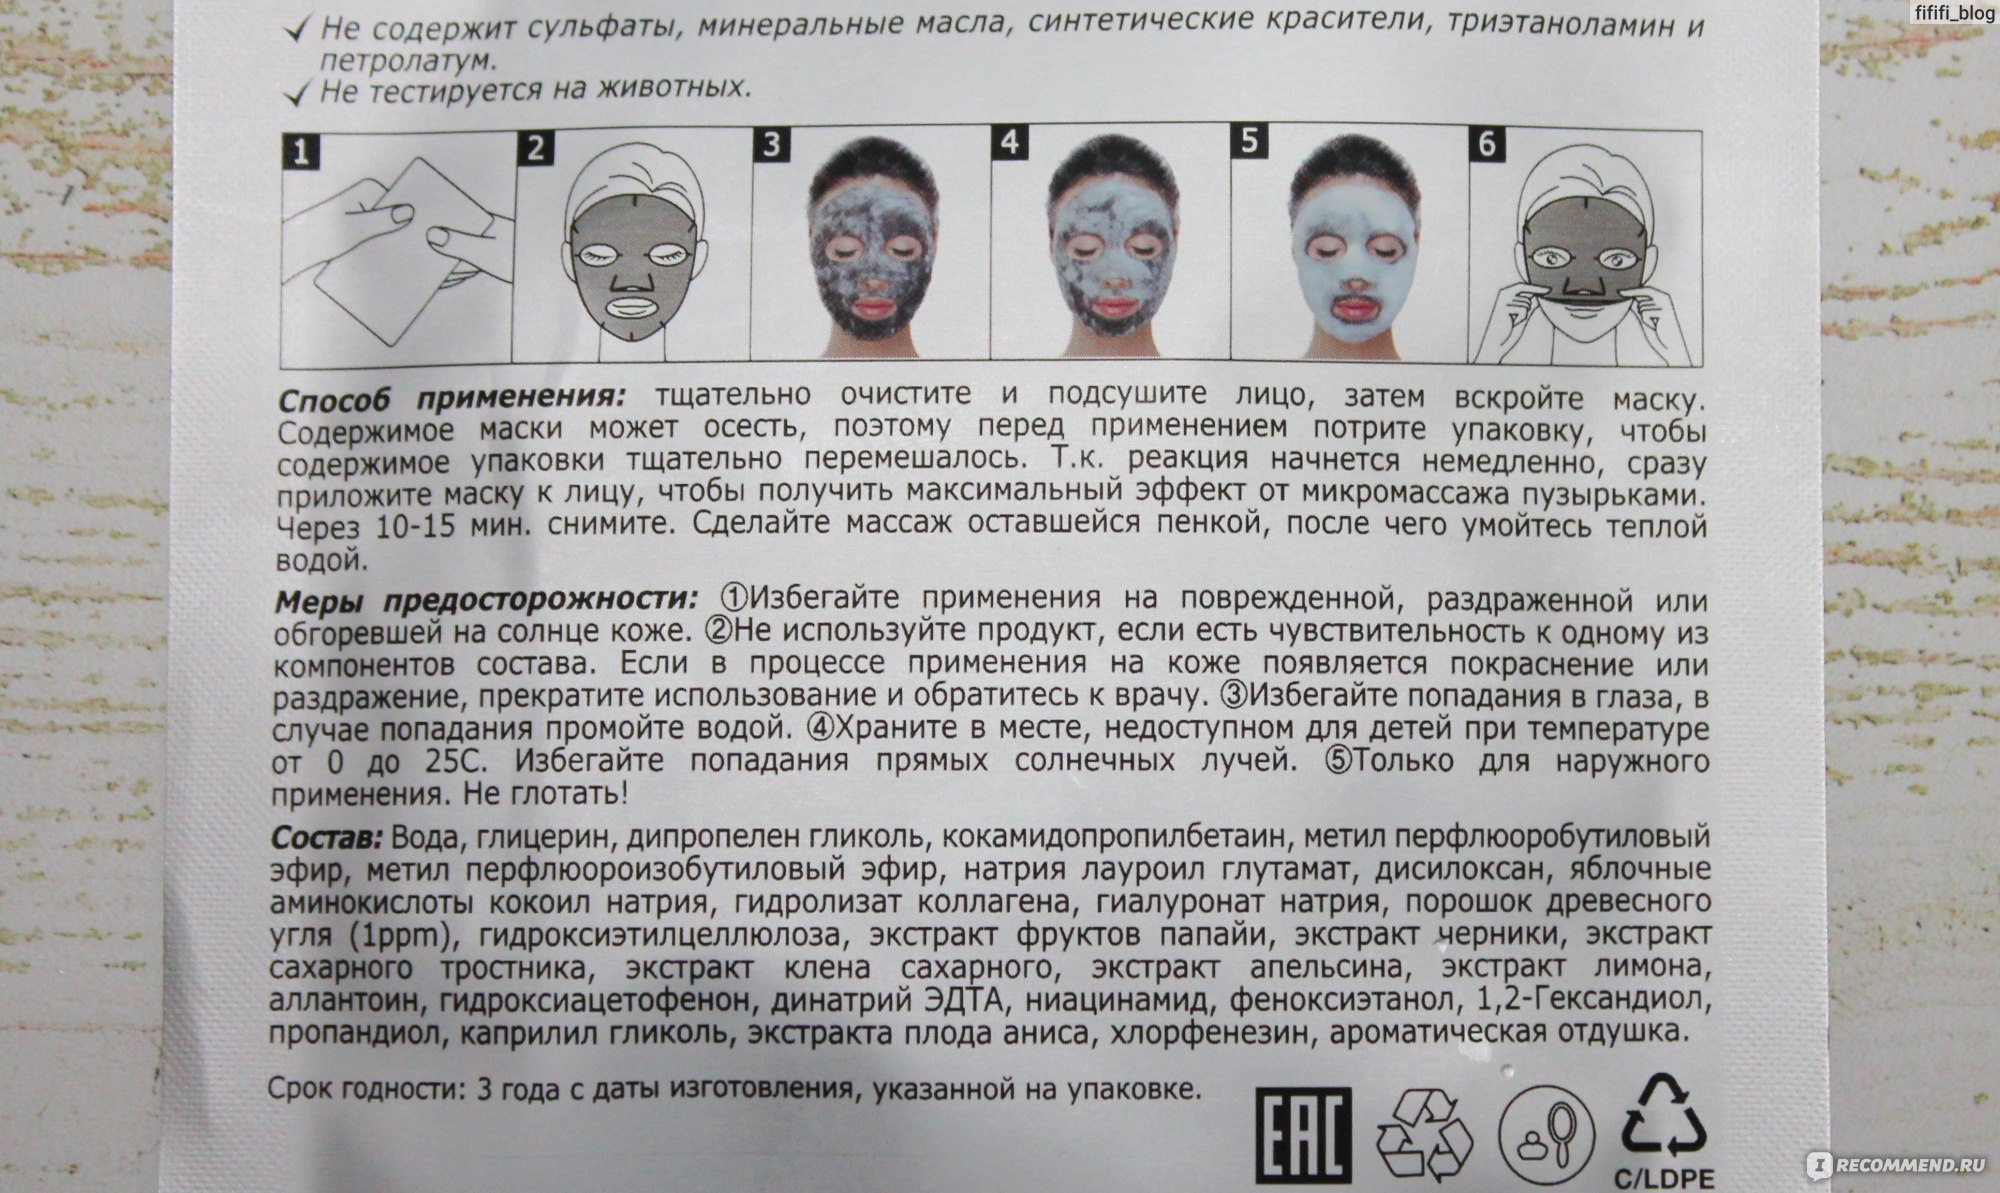 Можно ли тканевые маски использовать повторно. Маска для лица сколько раз в неделю делать. Маска для лица в треугольной упаковке. Сколько минут держать маску для лица. Сколько минут маска для лица.